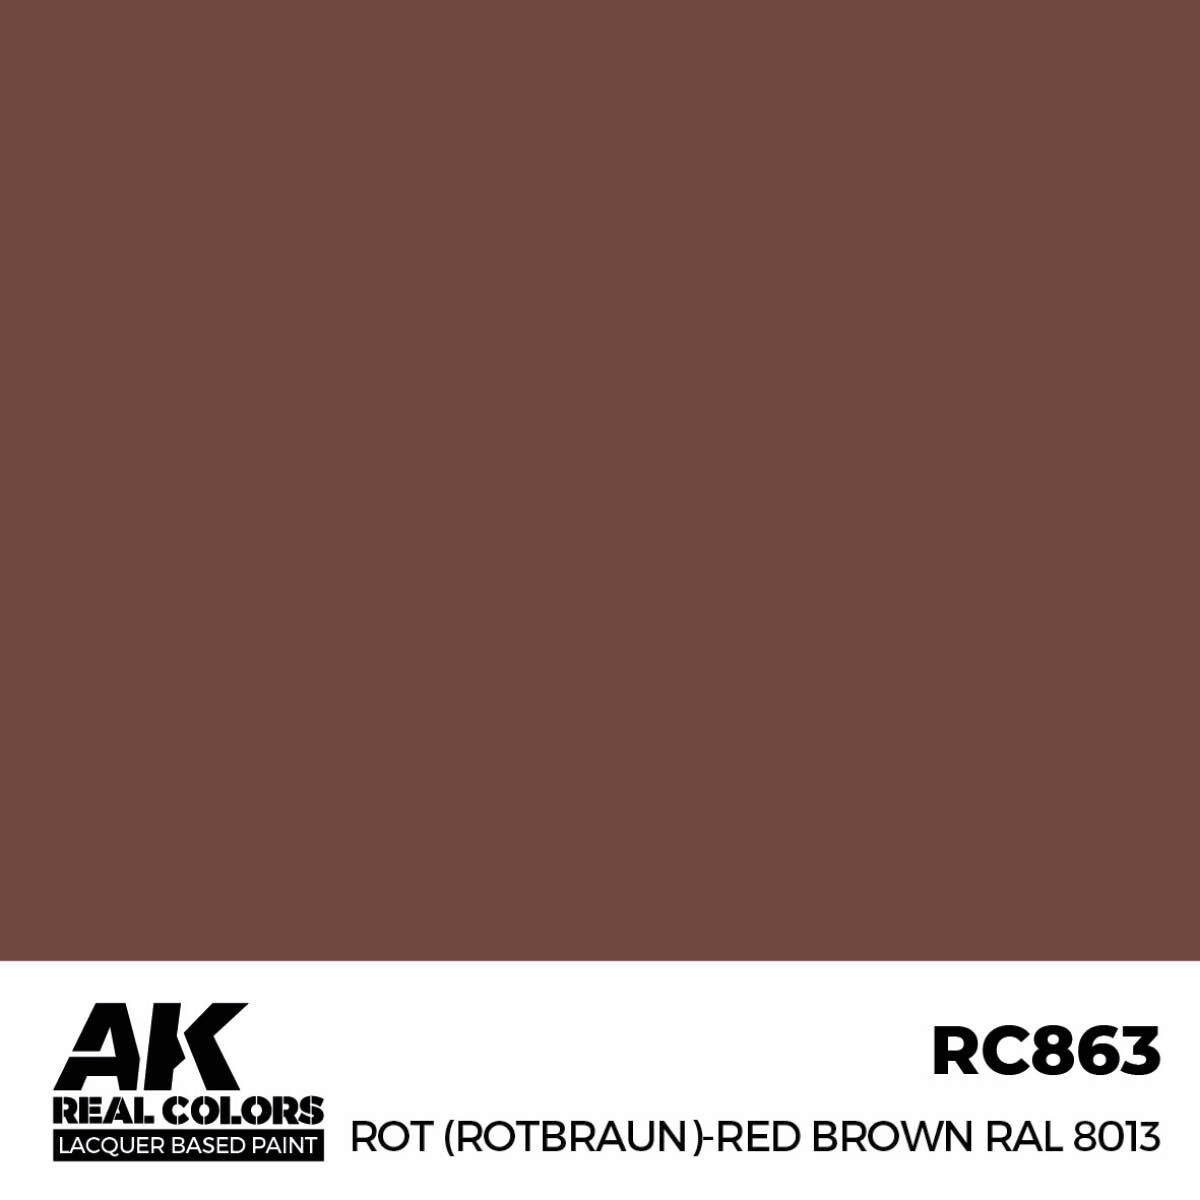 AK RC863 Real Colors Rot (Rotbraun)-Red Brown RAL 8013 17 ml.